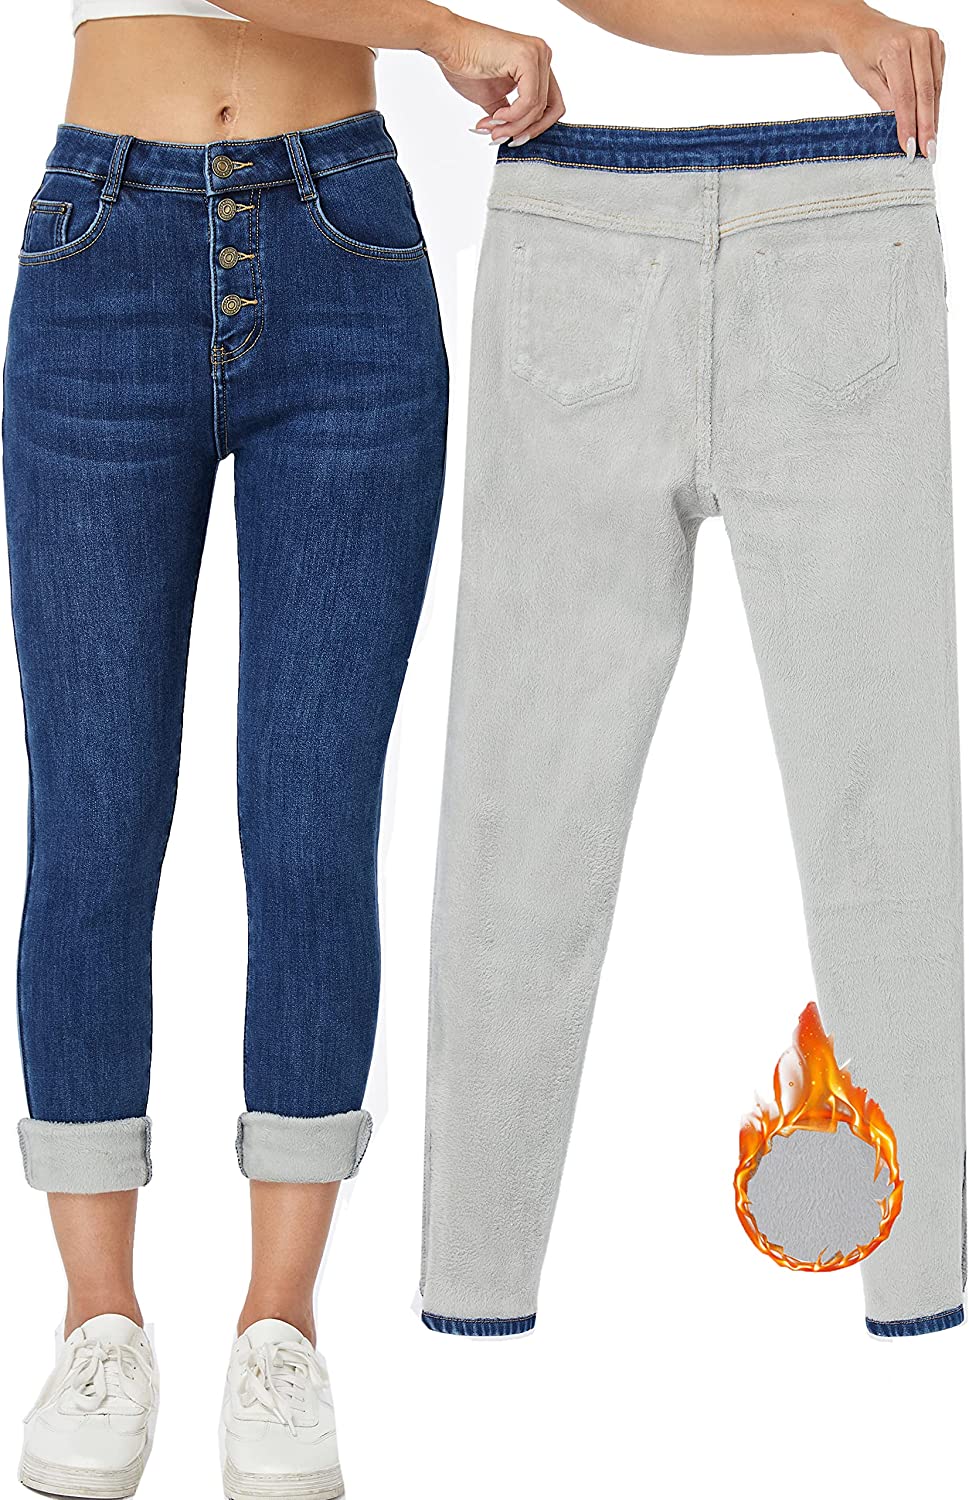 Yehopere Women's Winter Fleece Lined Jeans Slim Fit Warm Skinny High Waist  Denim